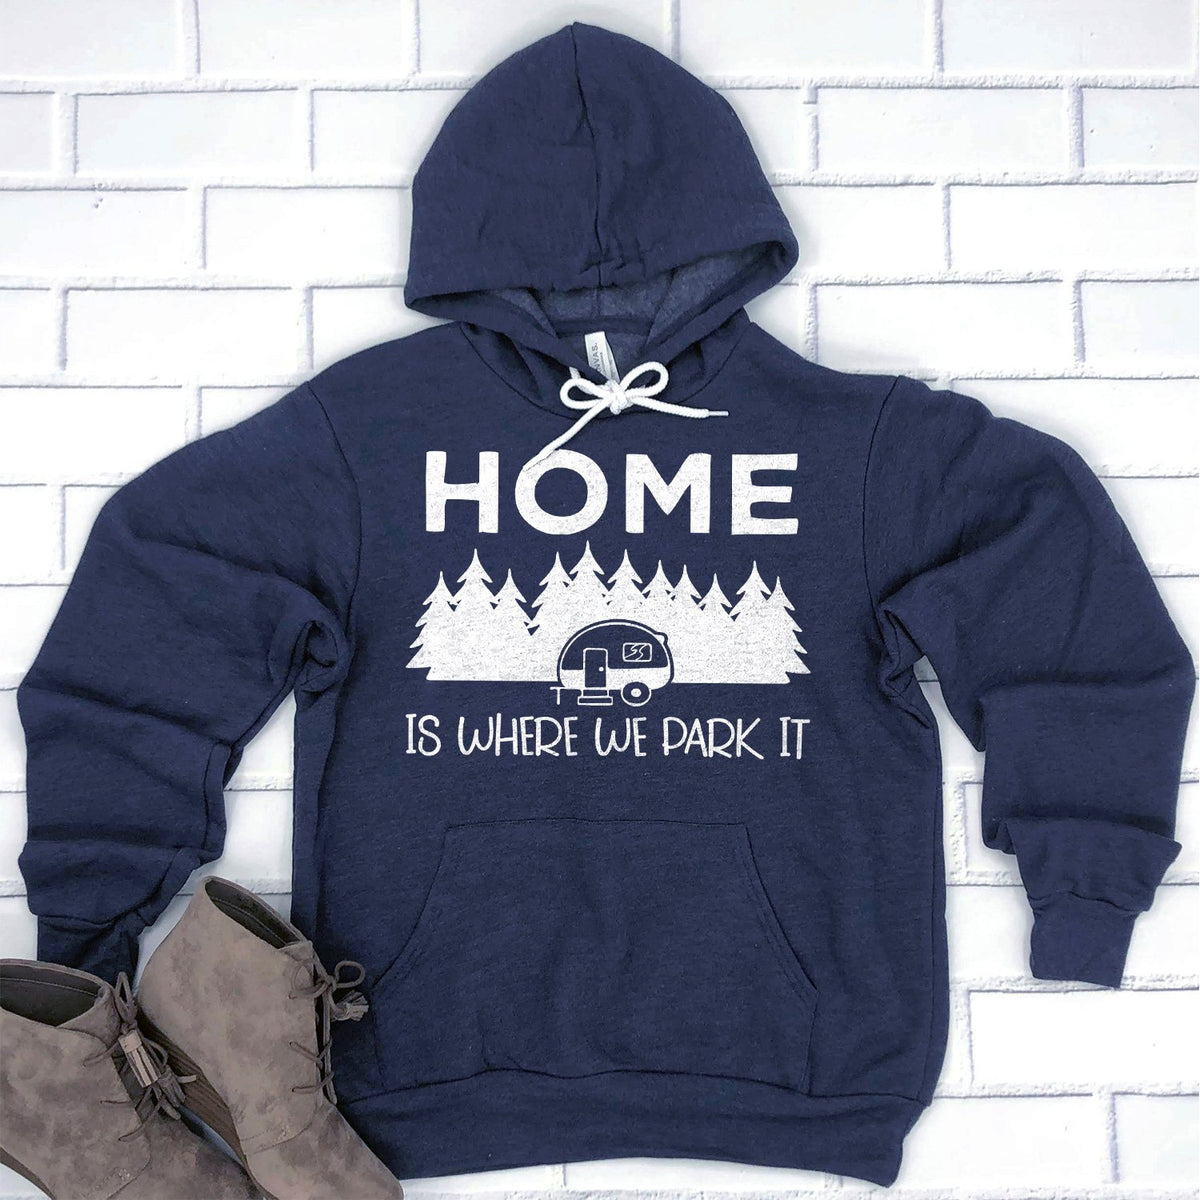 Home Is Where We Park It - Hoodie Sweatshirt